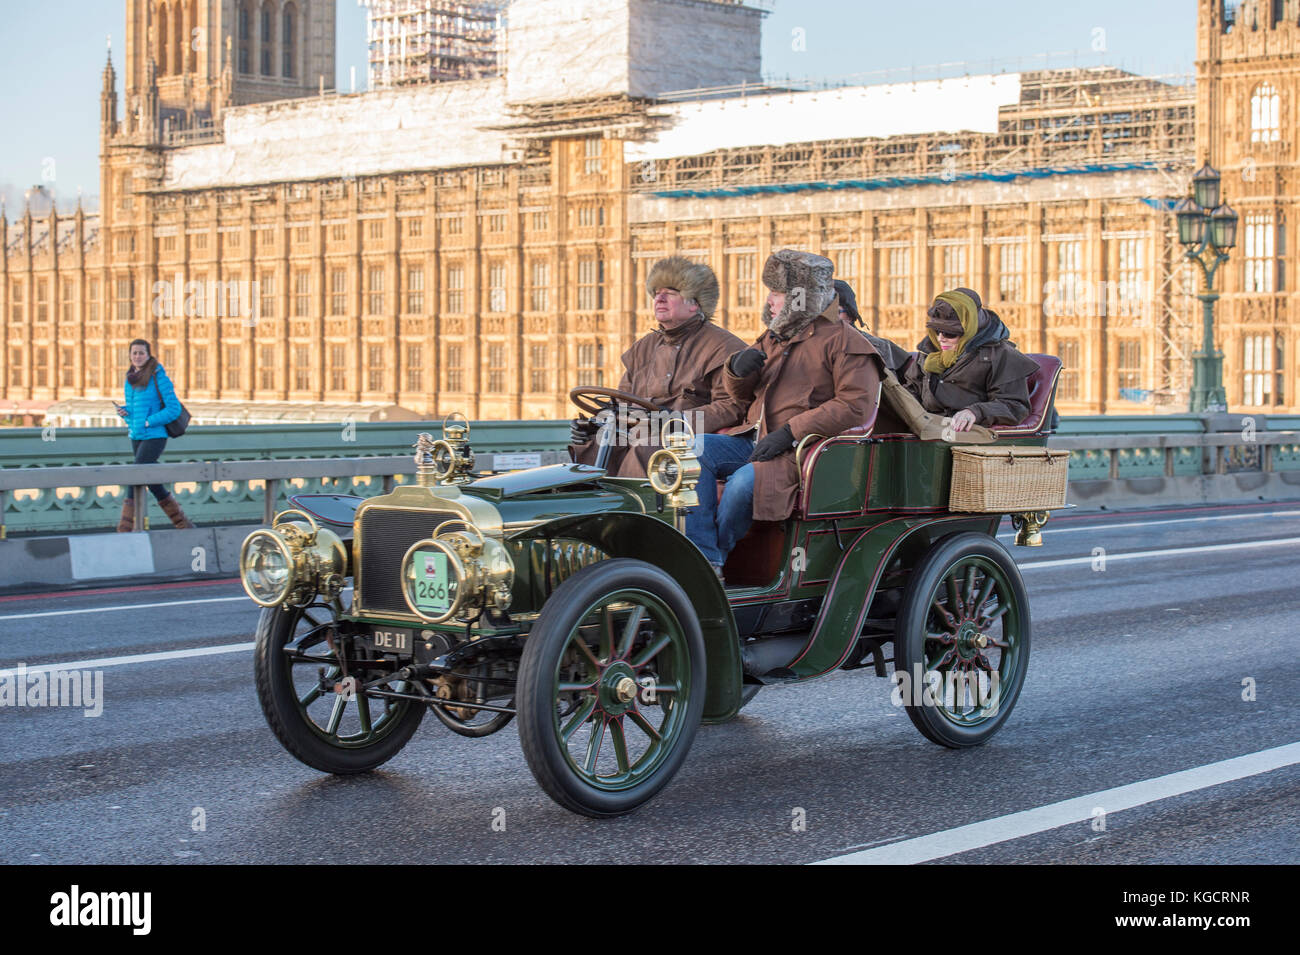 5 novembre 2017. Bonhams de Londres à Brighton, la course automobile de vétéran, la plus longue course automobile au monde, 1903 Darracq sur le pont de Westminster. Banque D'Images